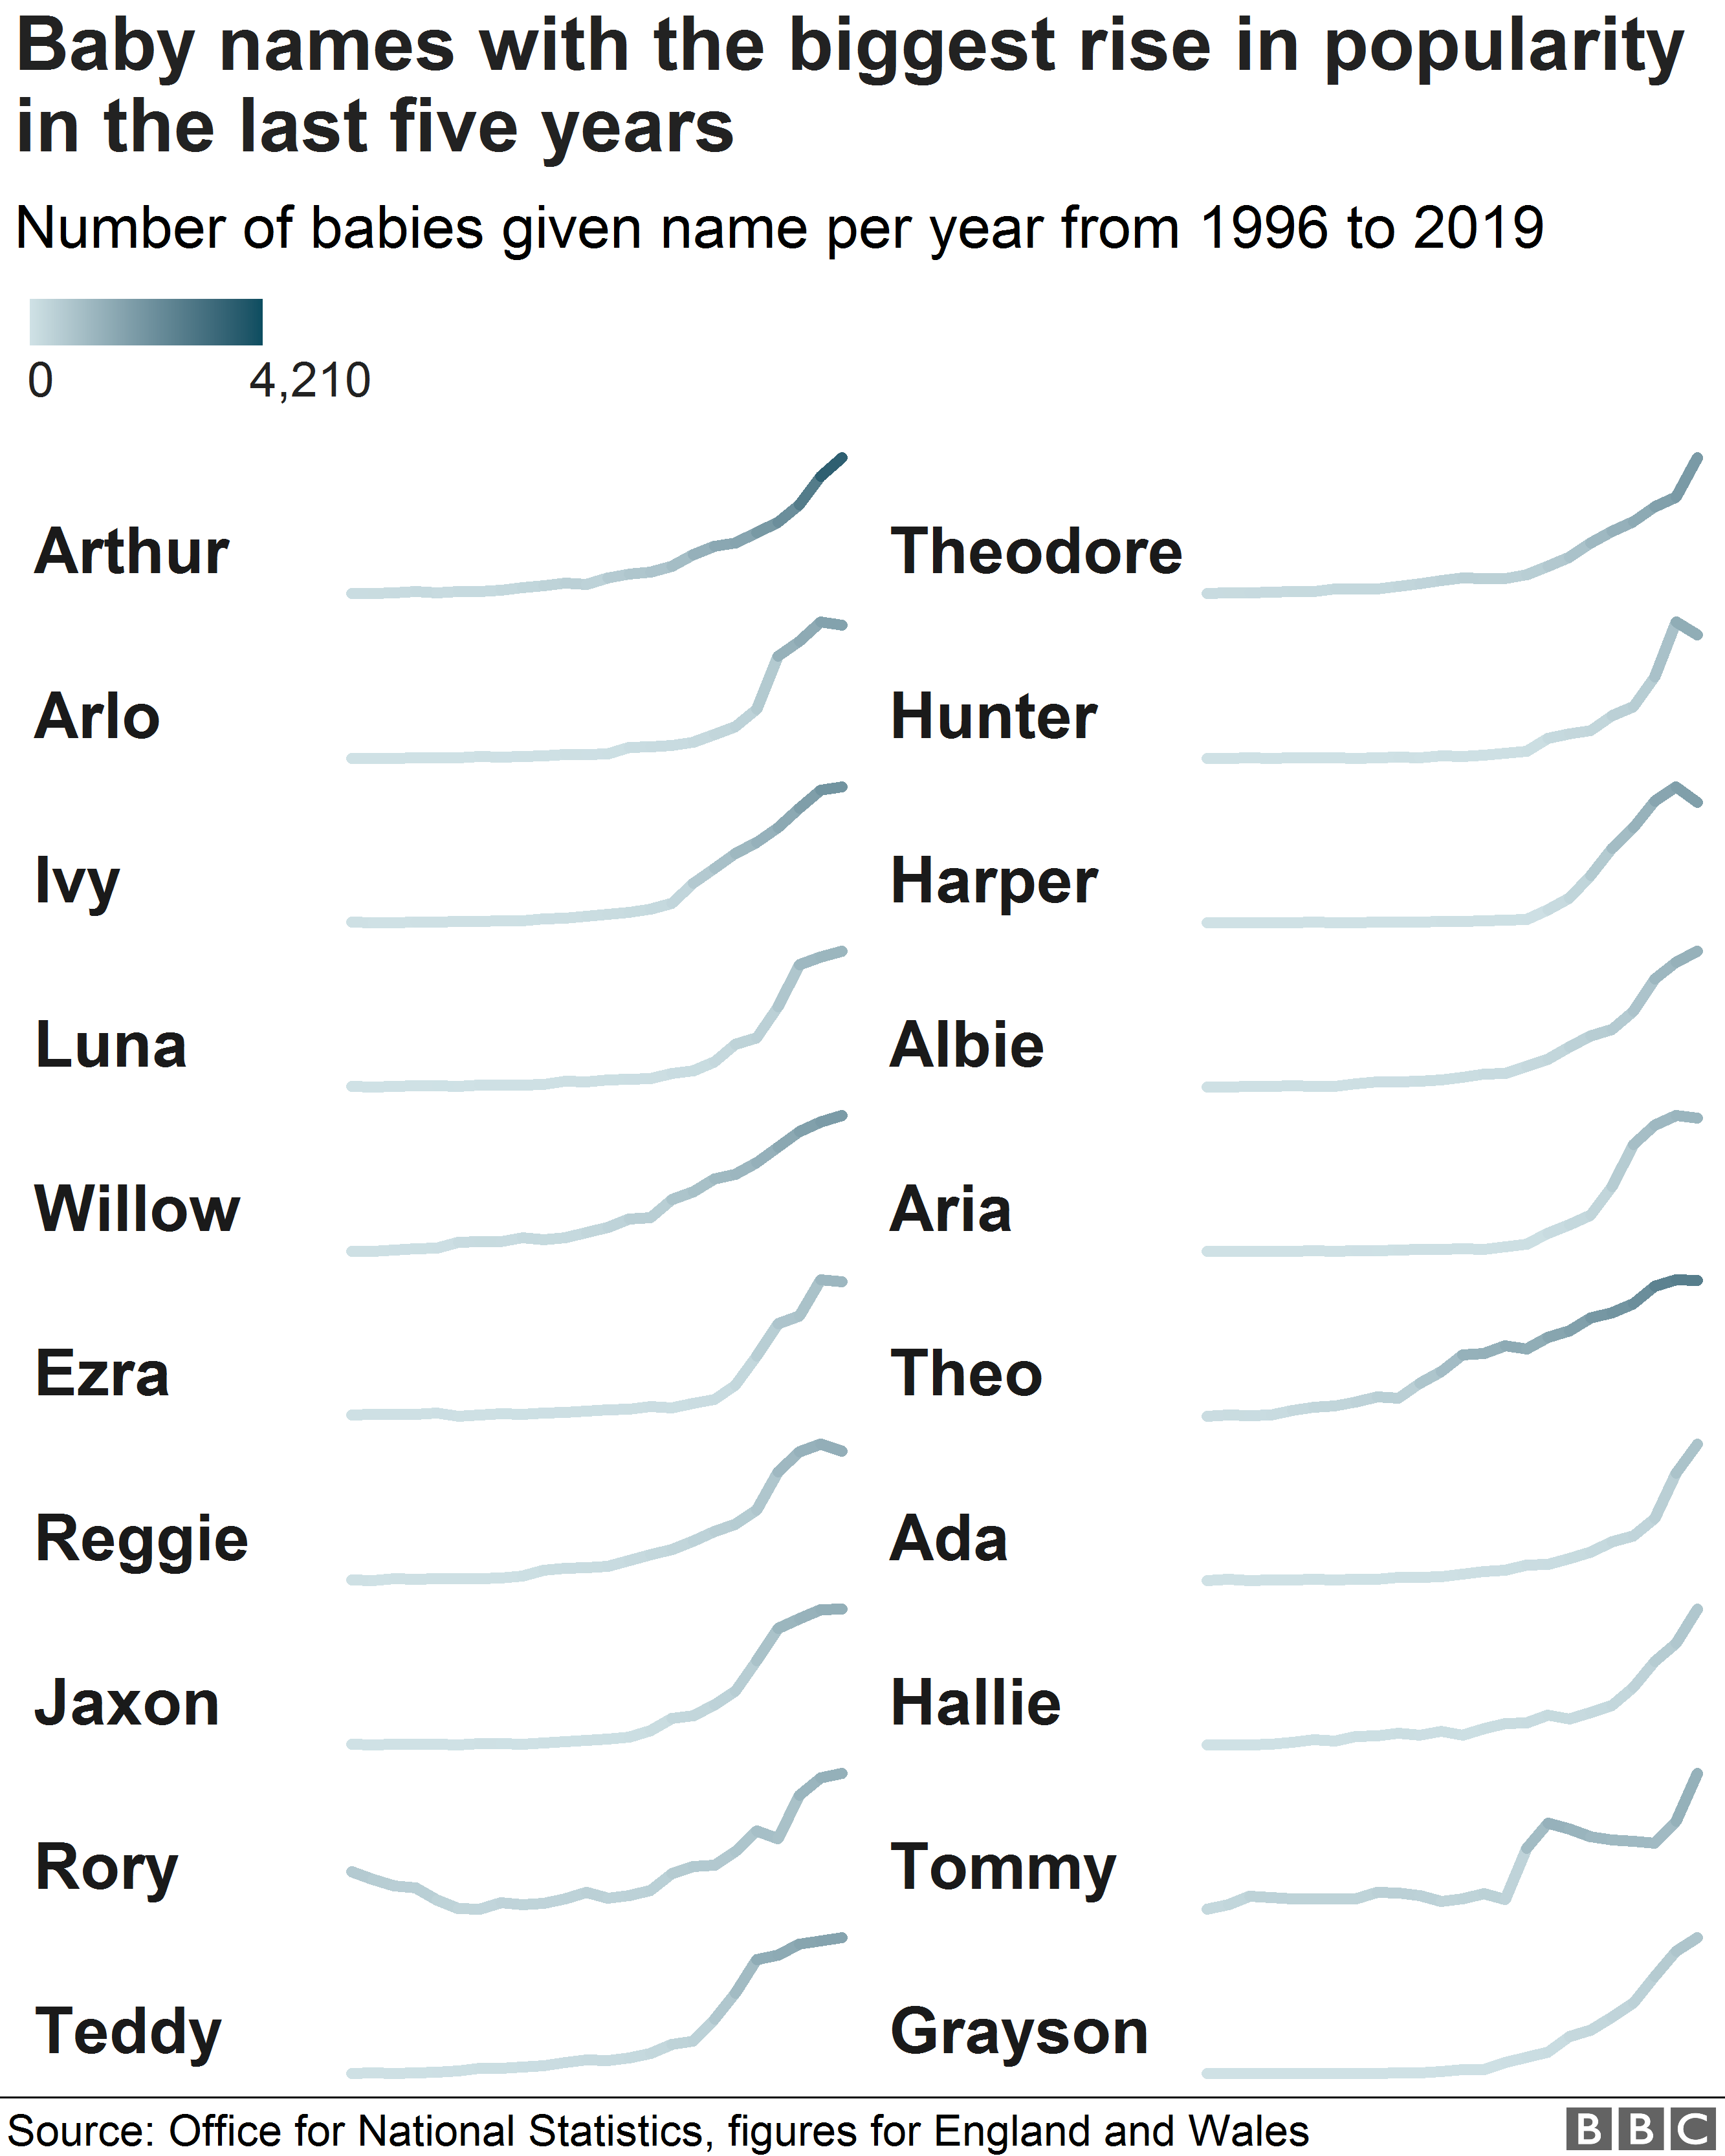 Диаграмма, показывающая самые большие стояки для самых популярных детских имен